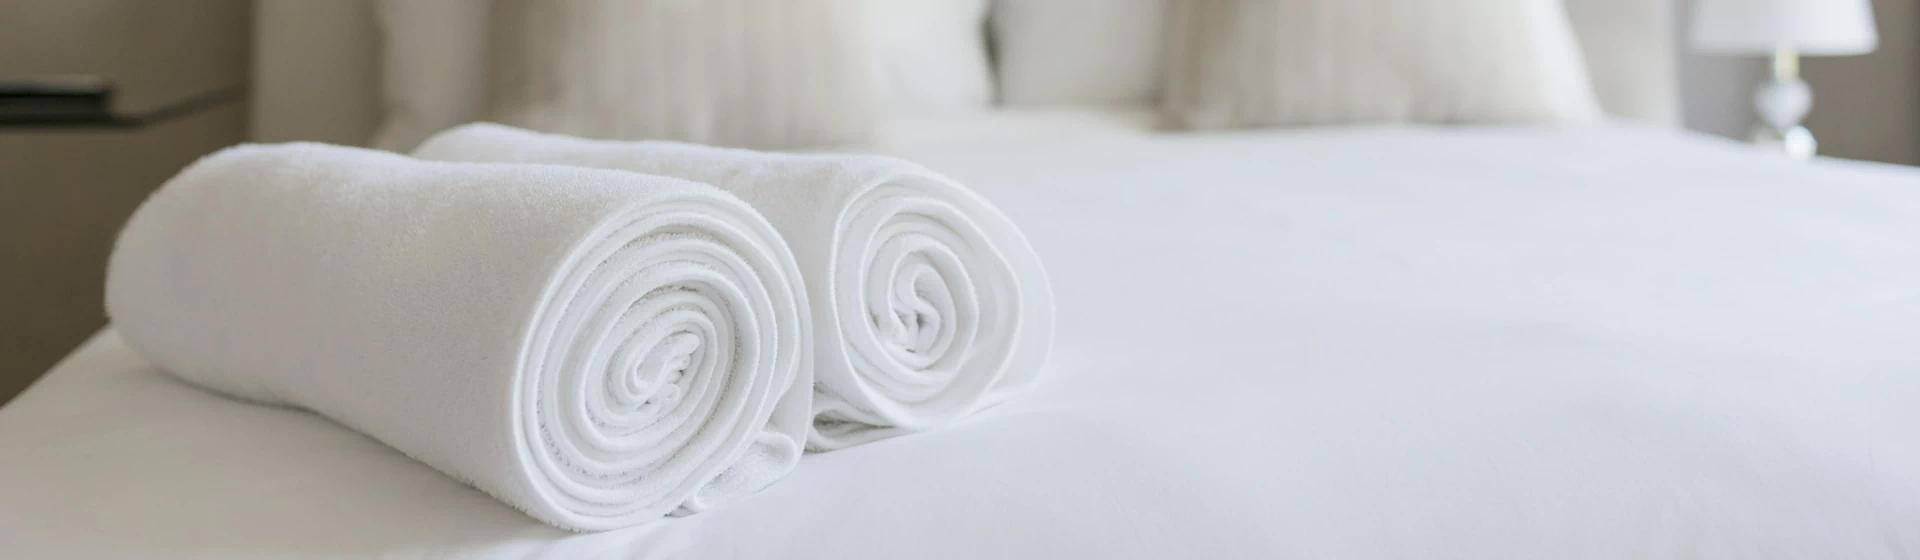 Białe ręczniki